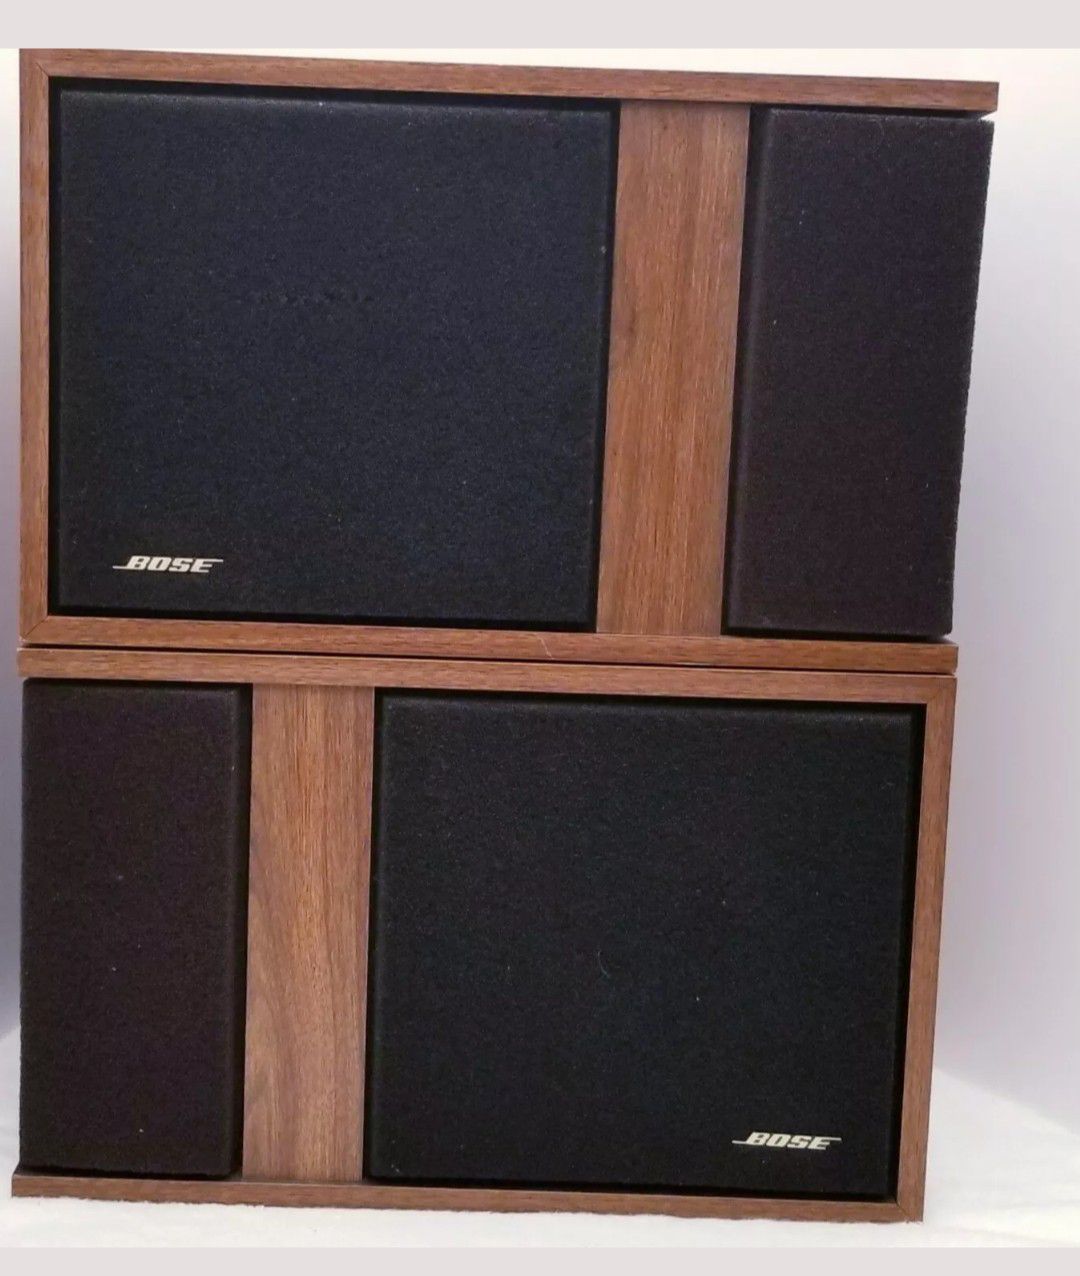 Bose 301 vintage speakers